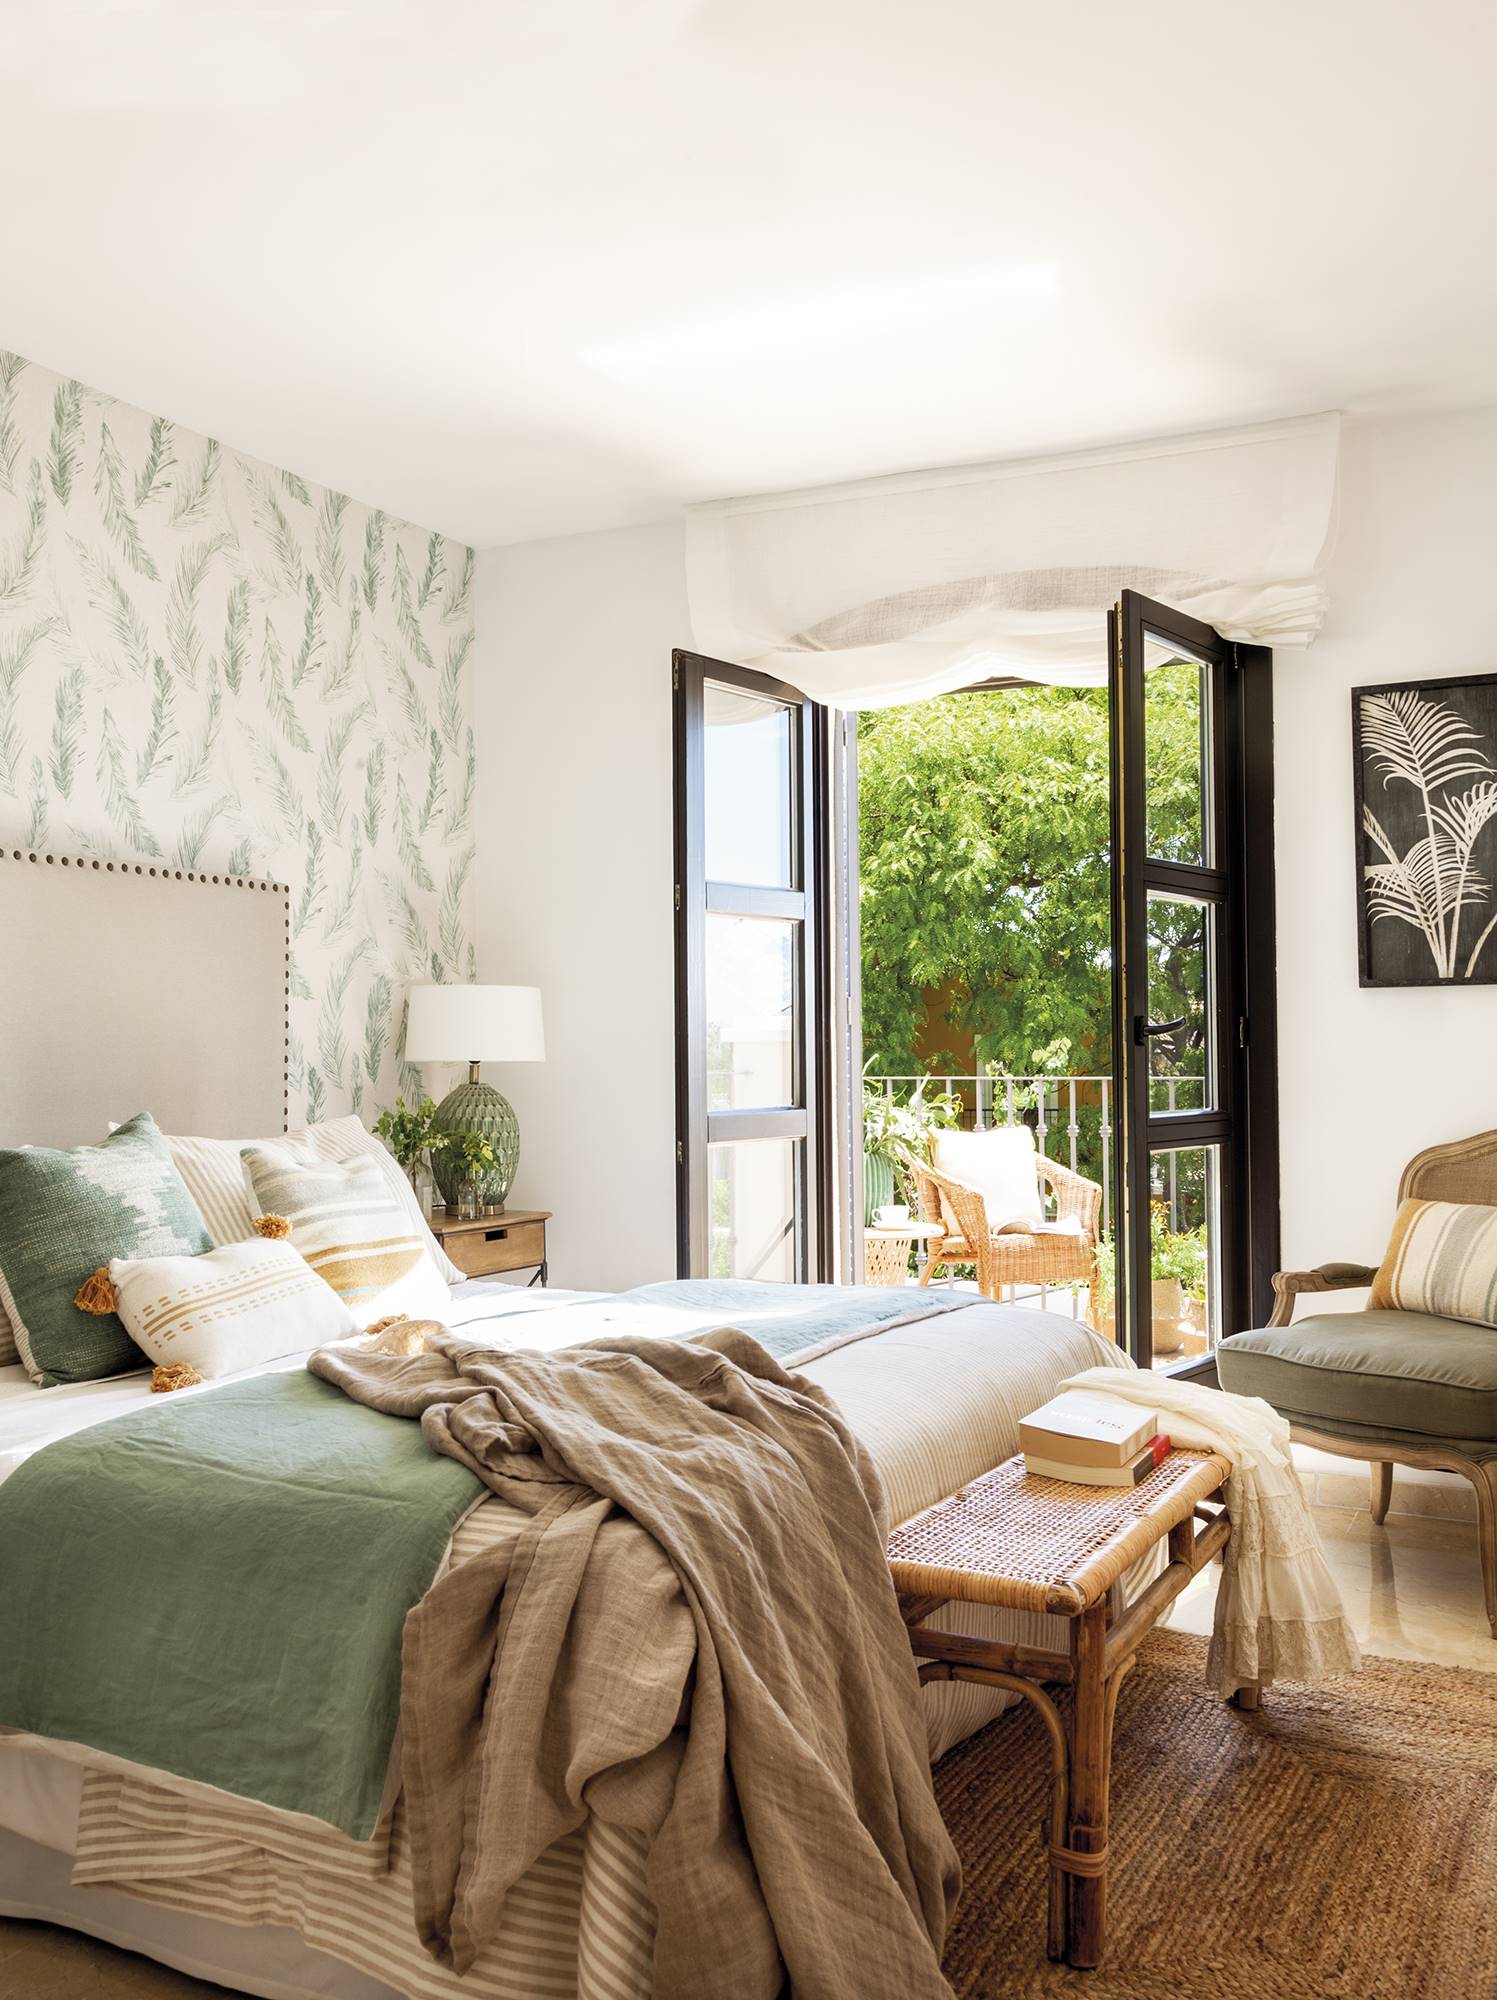 Dormitorio clásico con cabecero con tachuelas y papel pintado en la pared. 